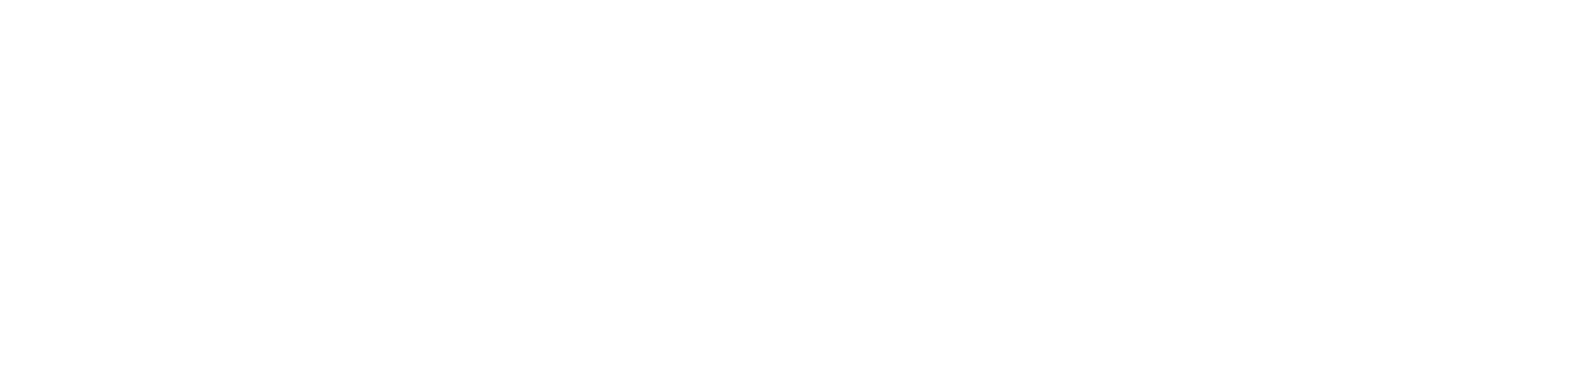 Centene logo large for dark backgrounds (transparent PNG)